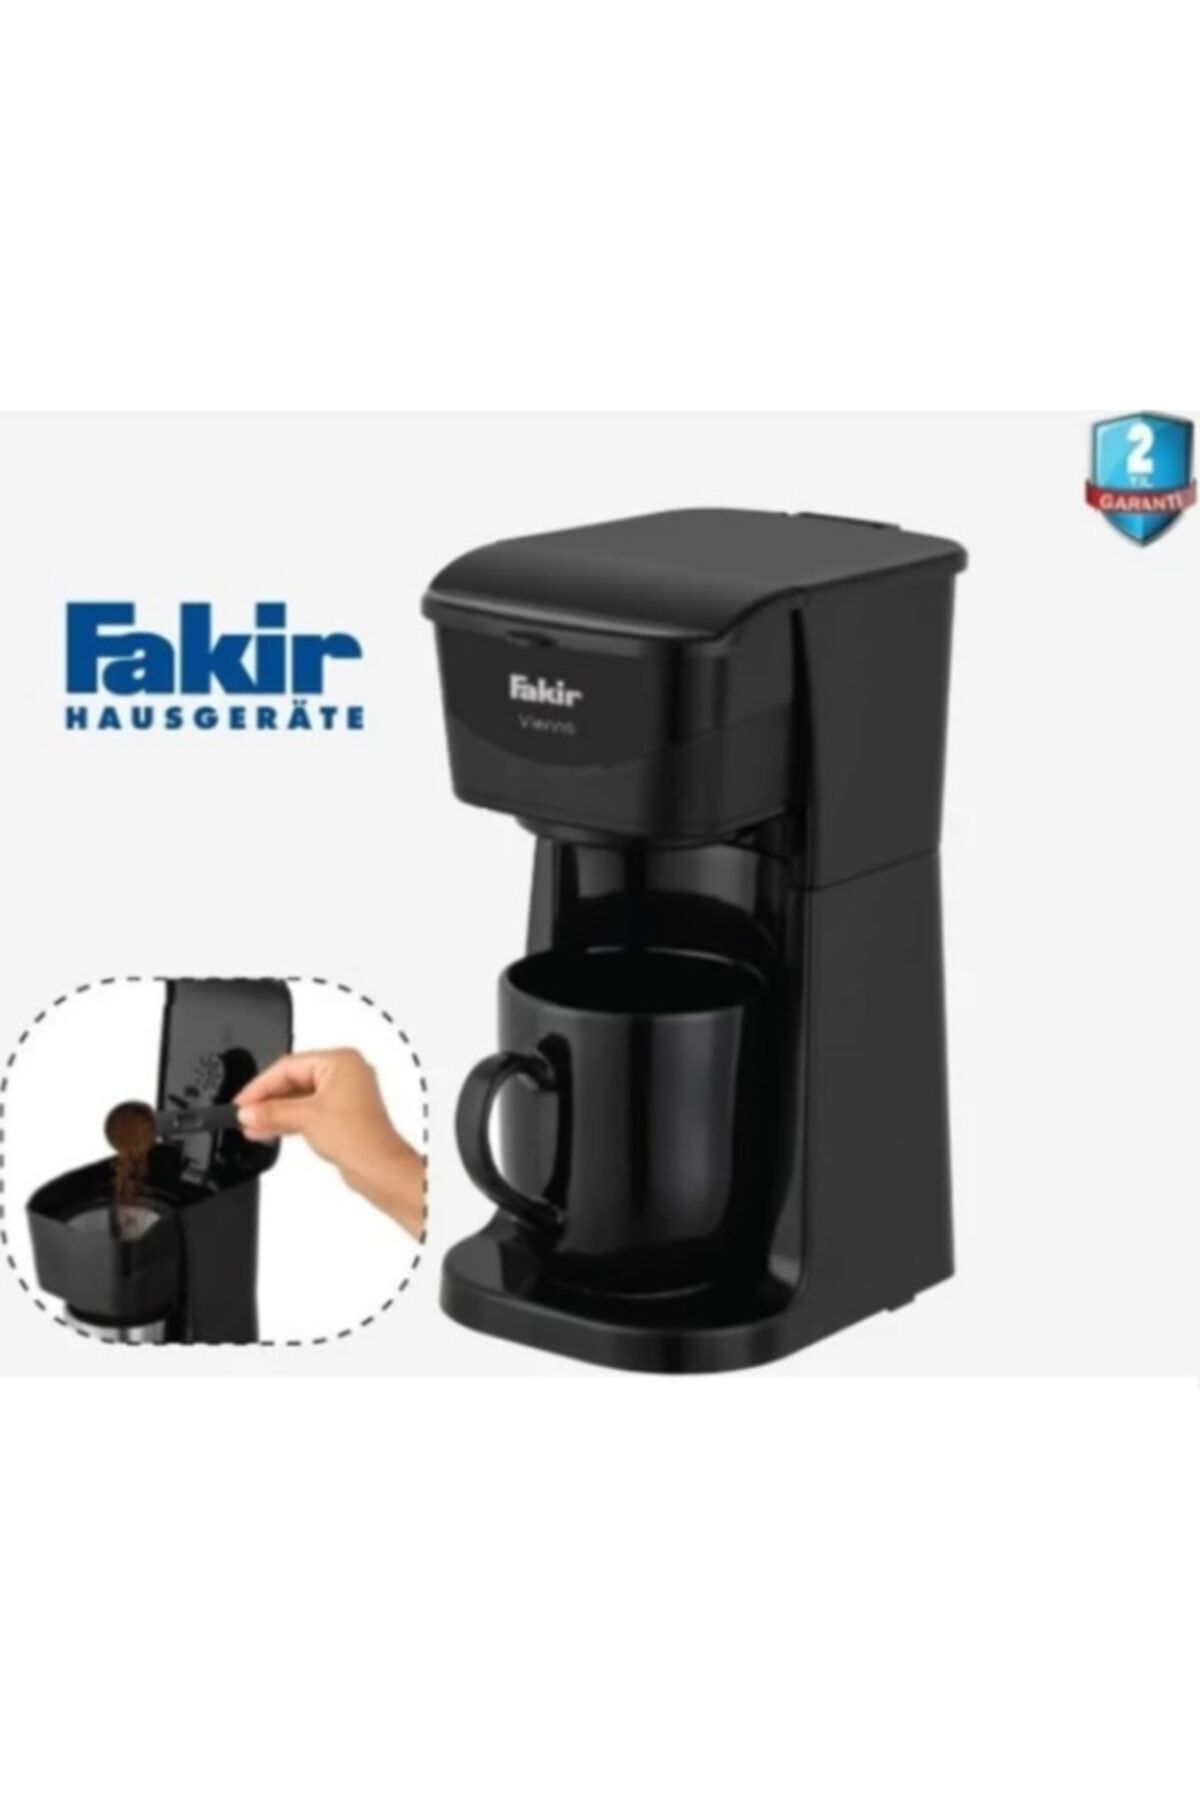 Fakir Vienna Filtre Kahve Makinesi